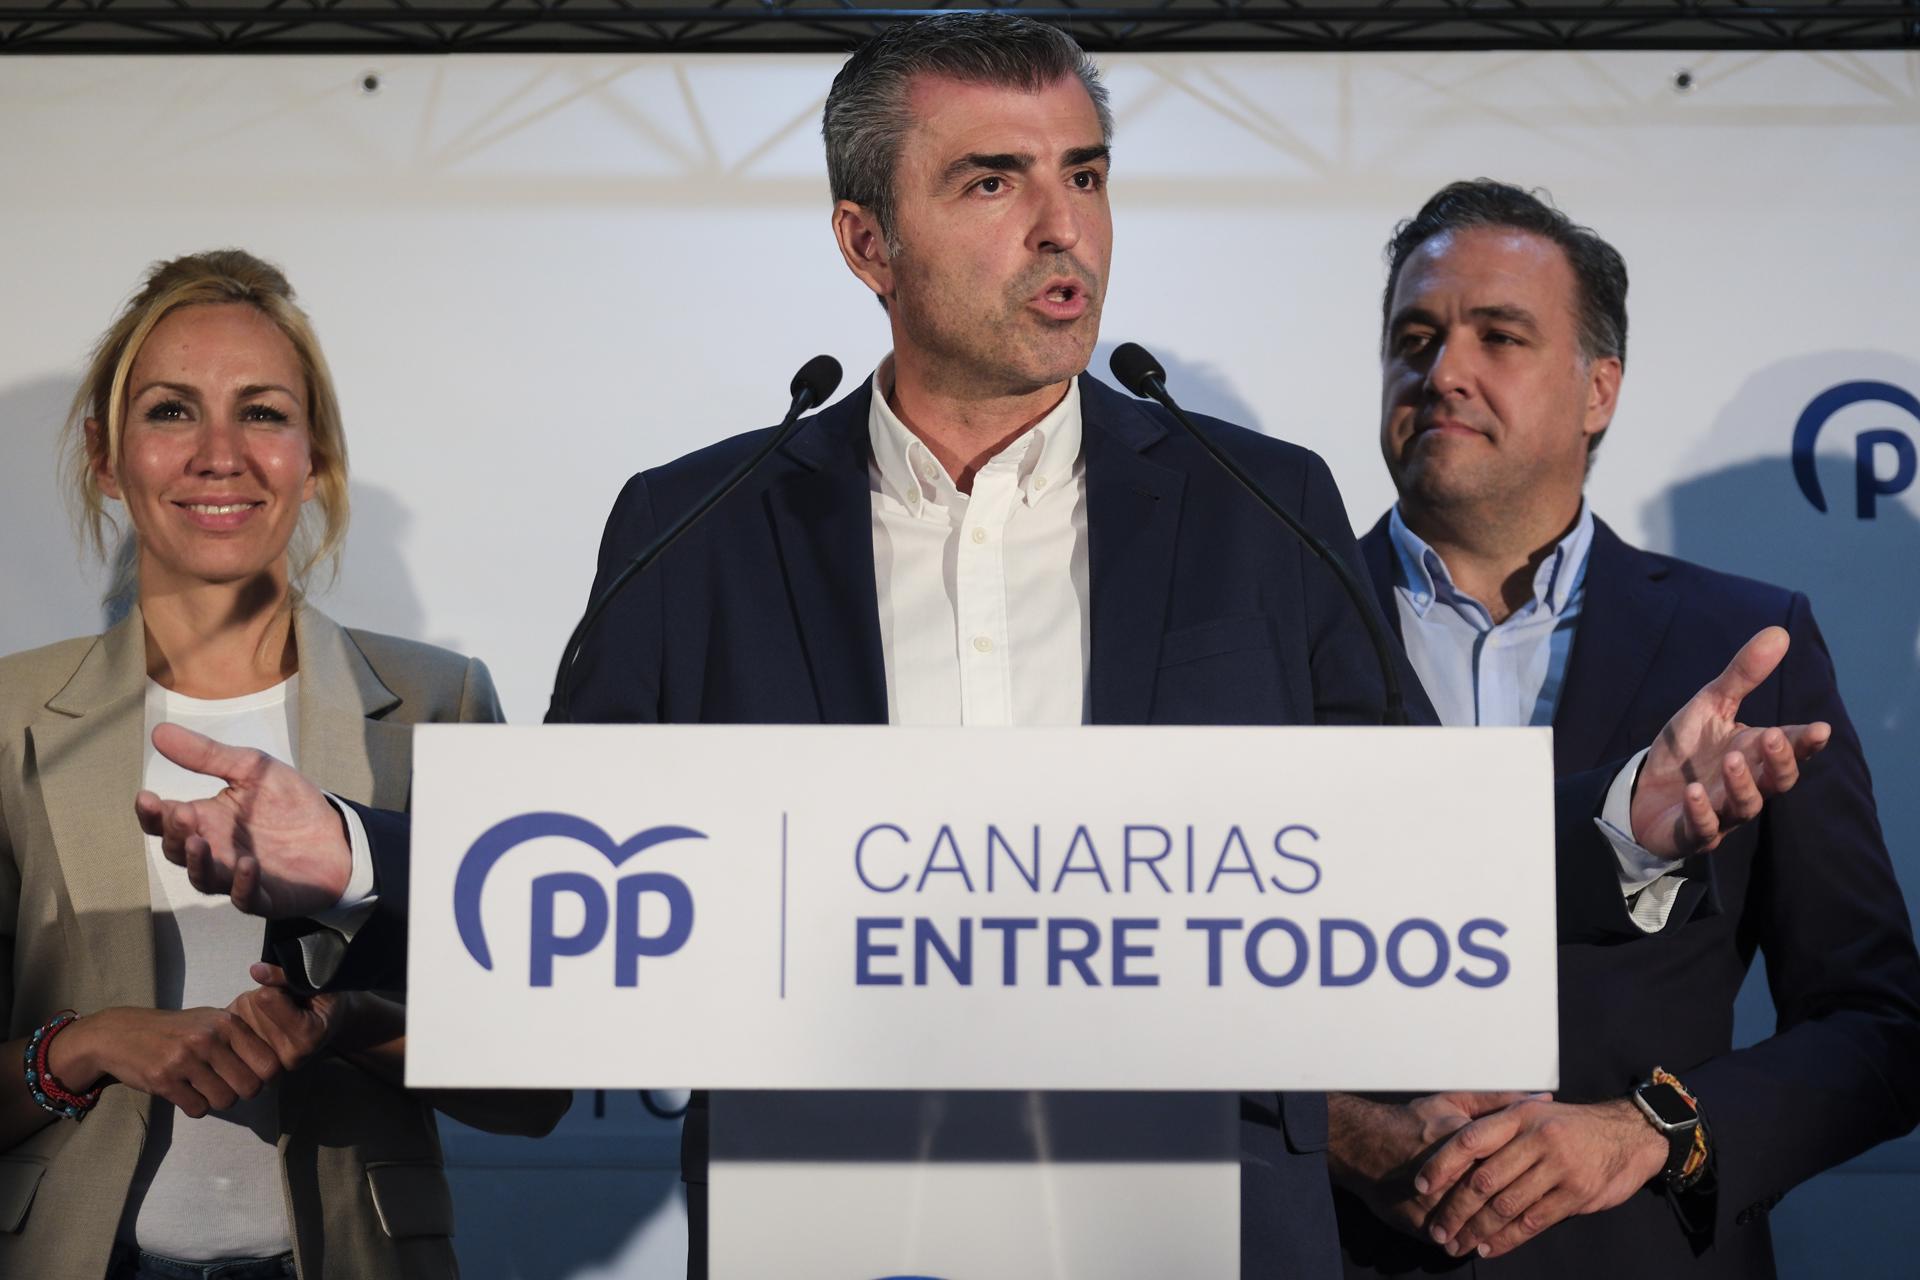 El candidato a la presidencia del Gobierno de Canarias por el Partido Popular, Manuel Domínguez (c), valora los resultados de su partido en las elecciones autonómicas y locales. EFE/Alberto Valdés